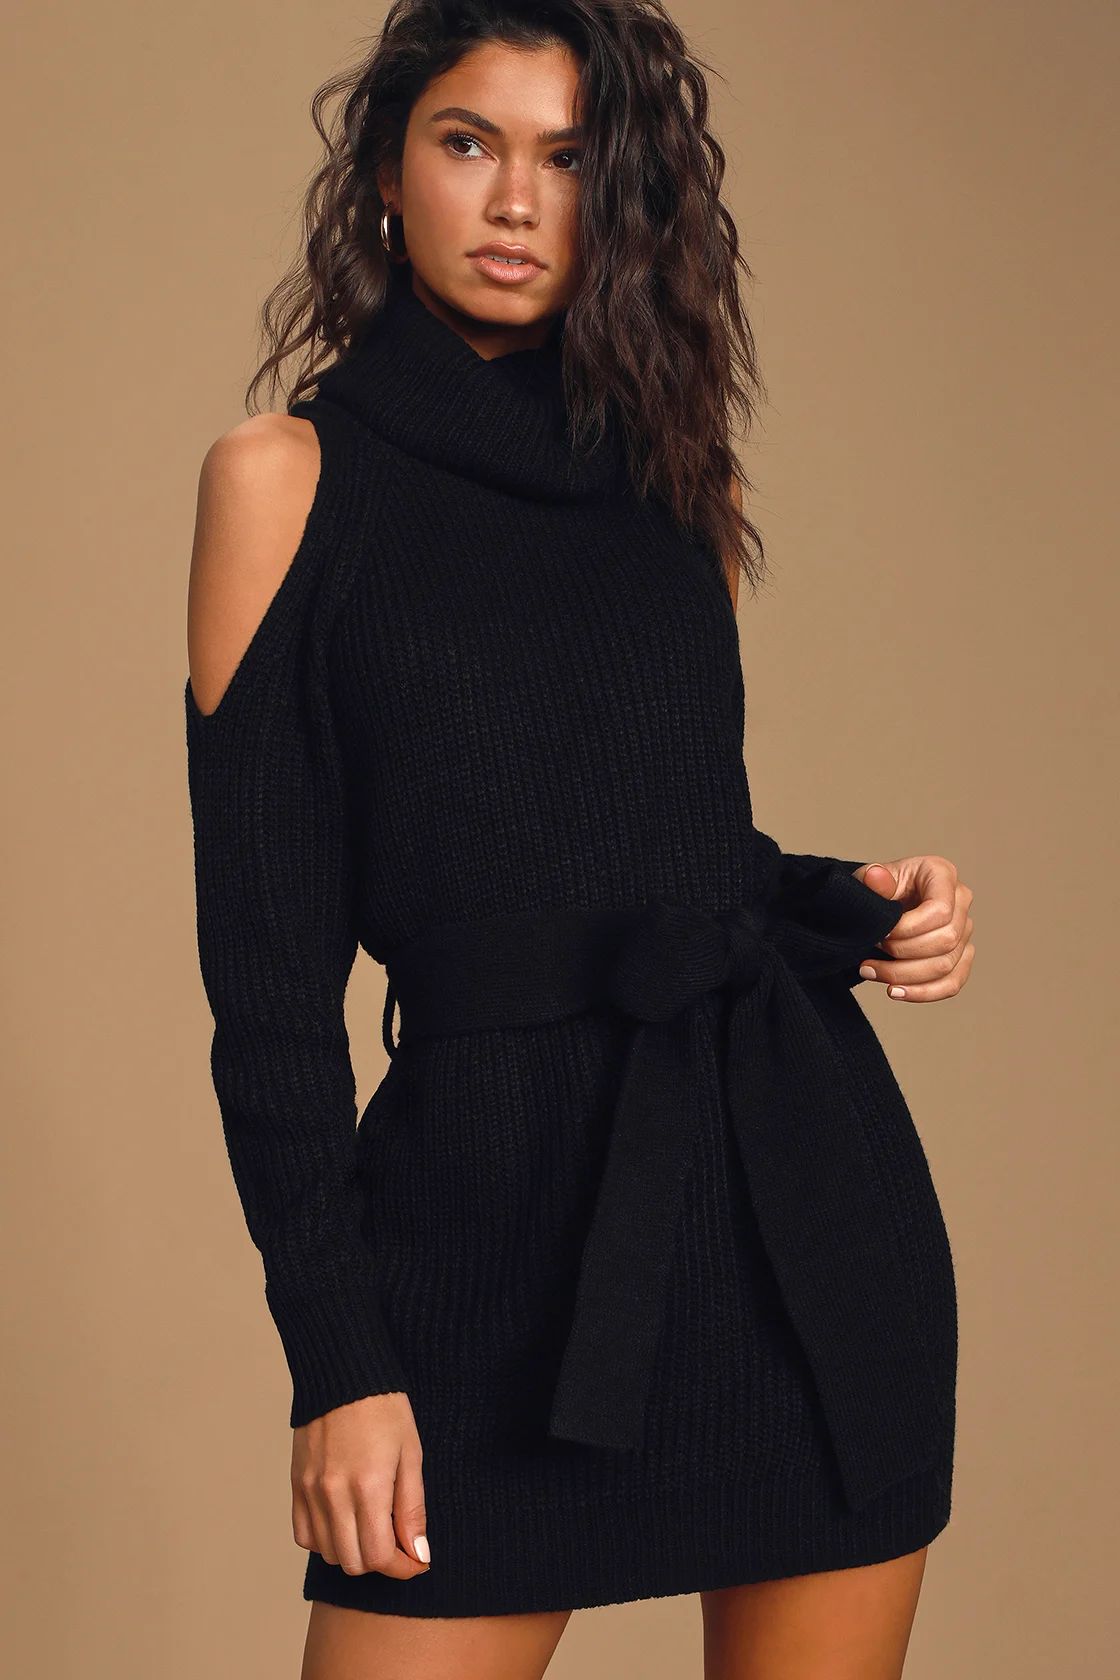 Sweet Demeanor Black Turtleneck Cold-Shoulder Sweater Dress | Lulus (US)